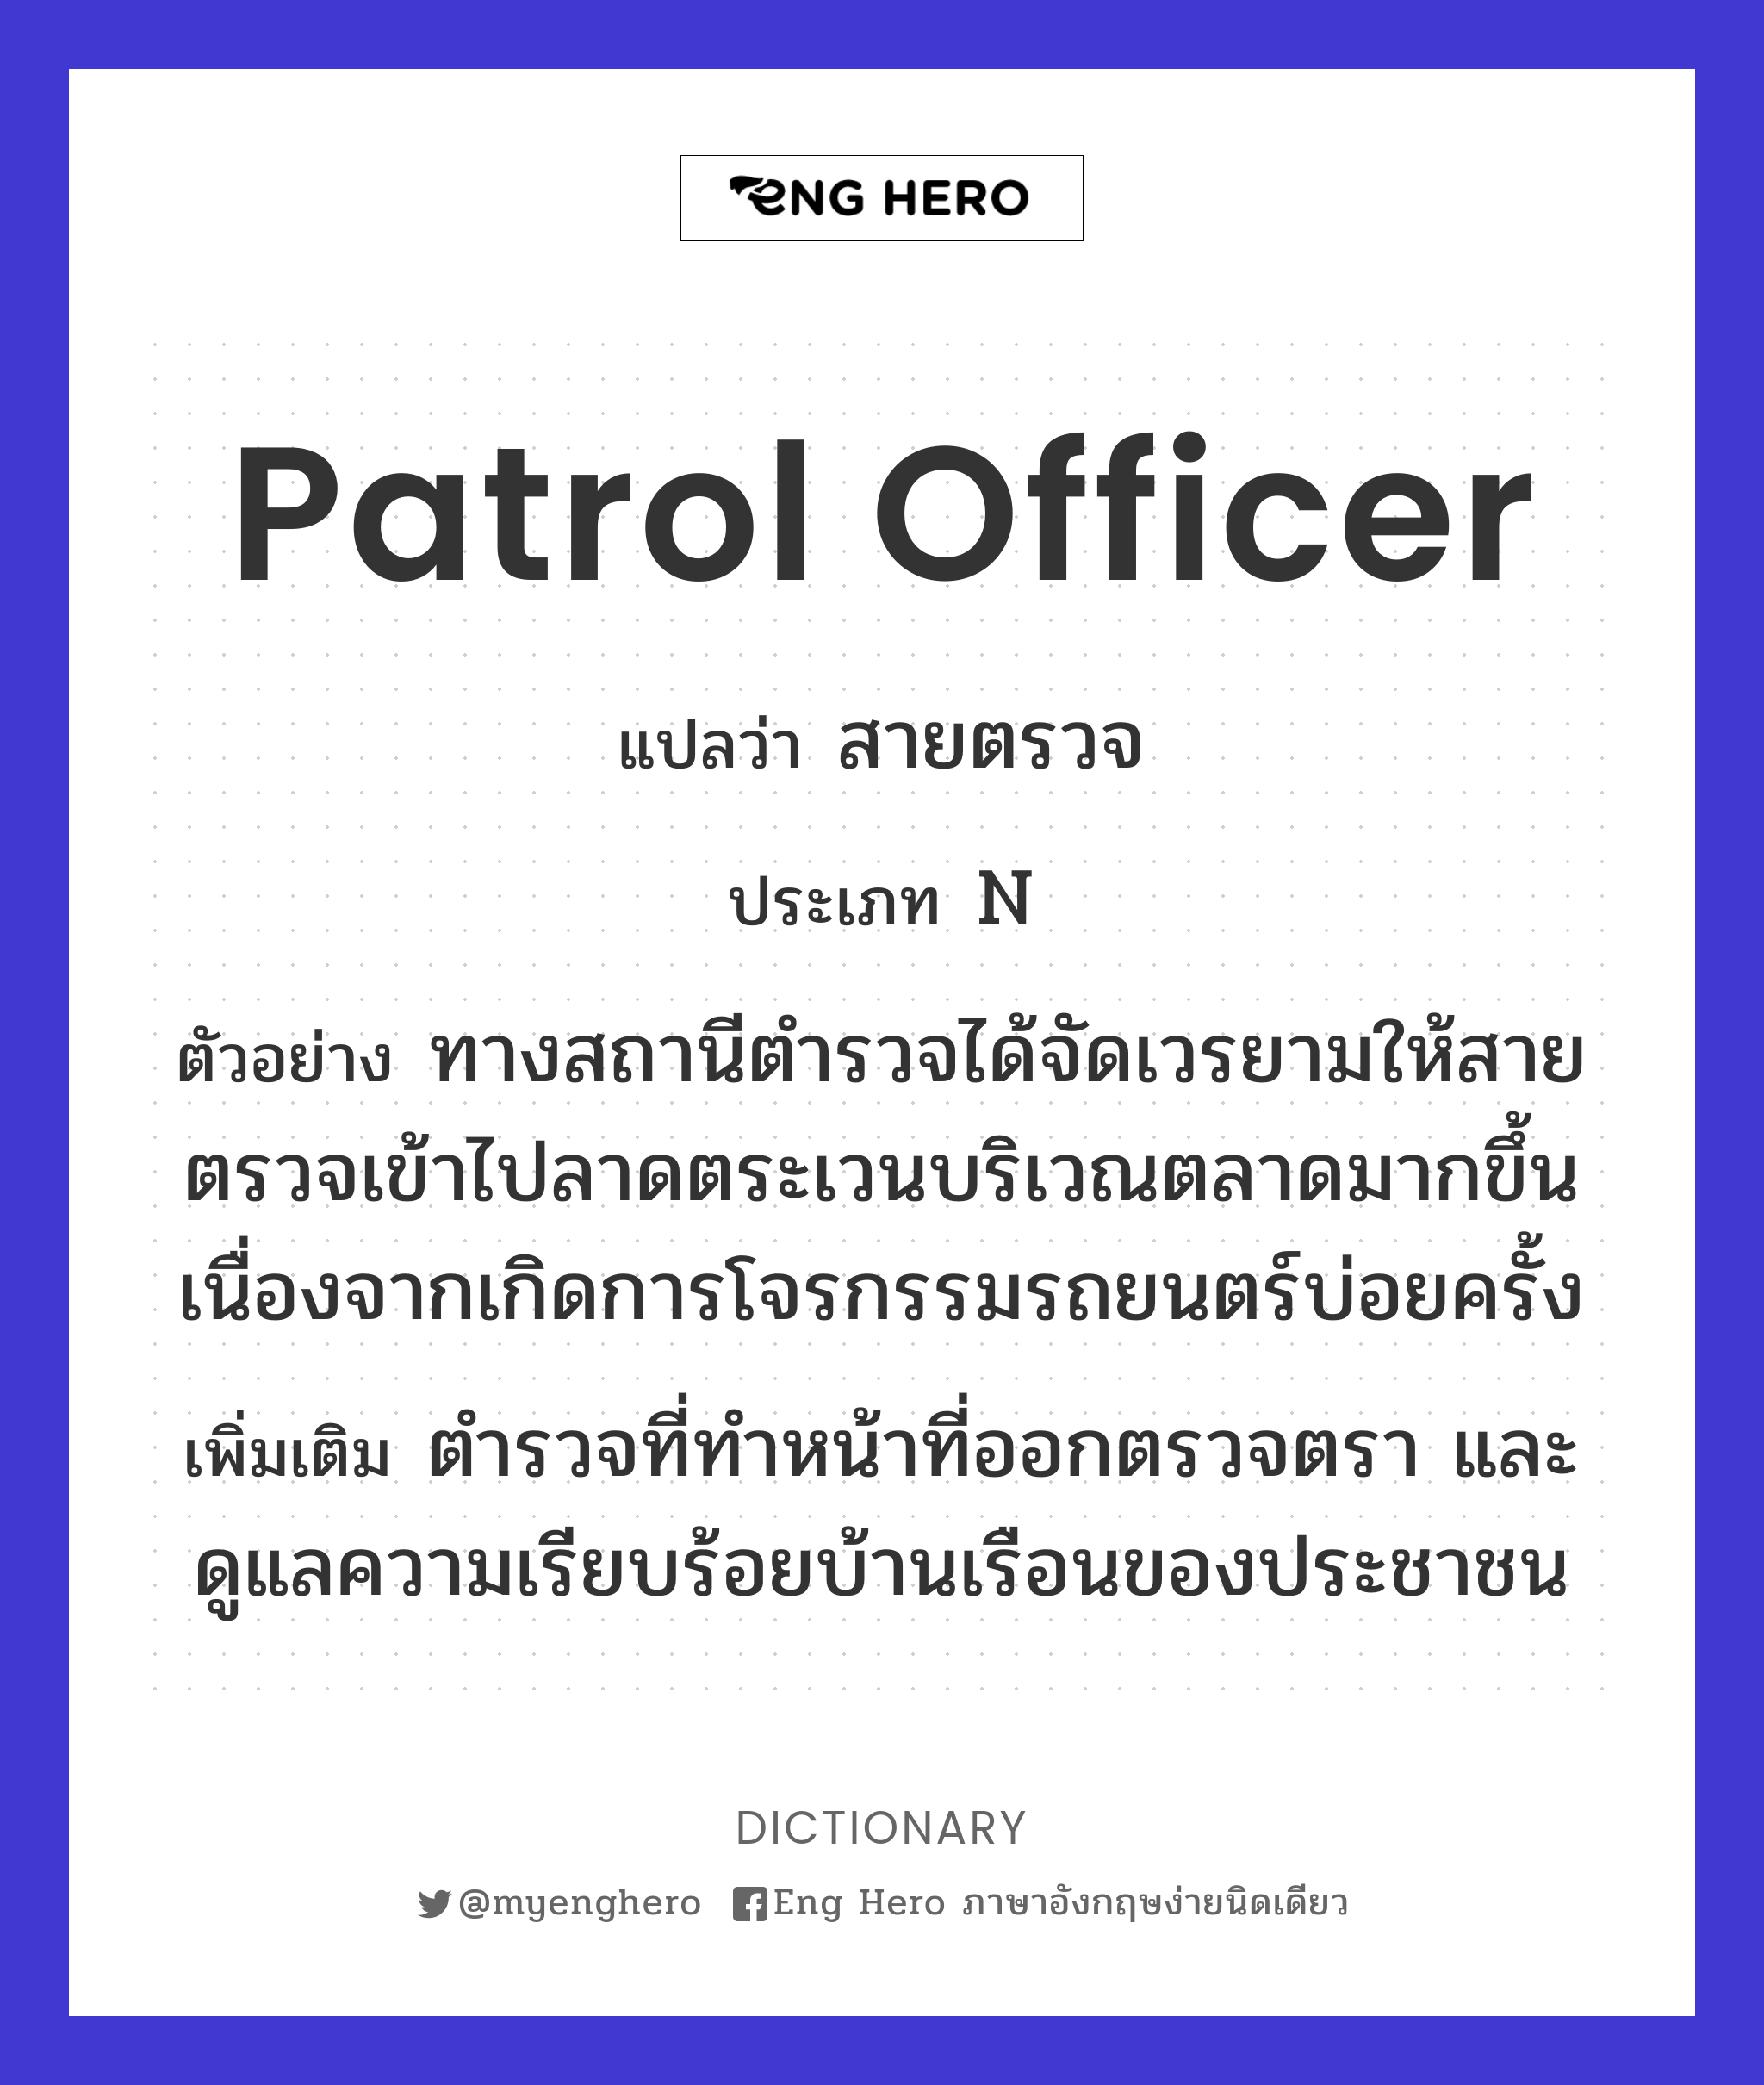 patrol officer